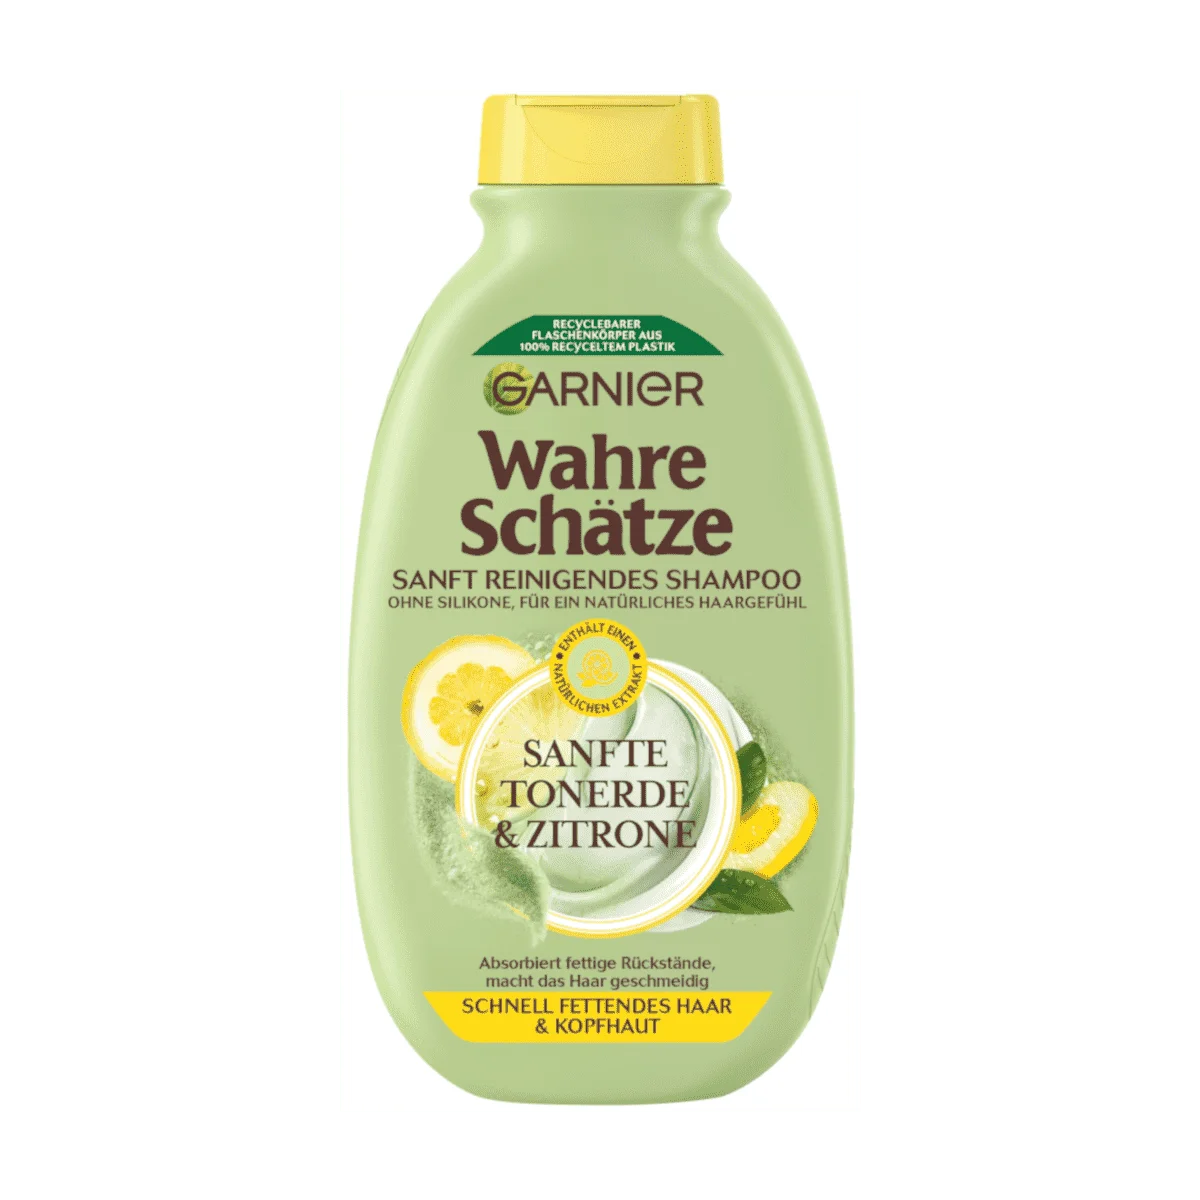 Garnier Wahre Schätze Sanft Reinigendes Shampoo sanfte Tonerde & Zitrone, 250 ml